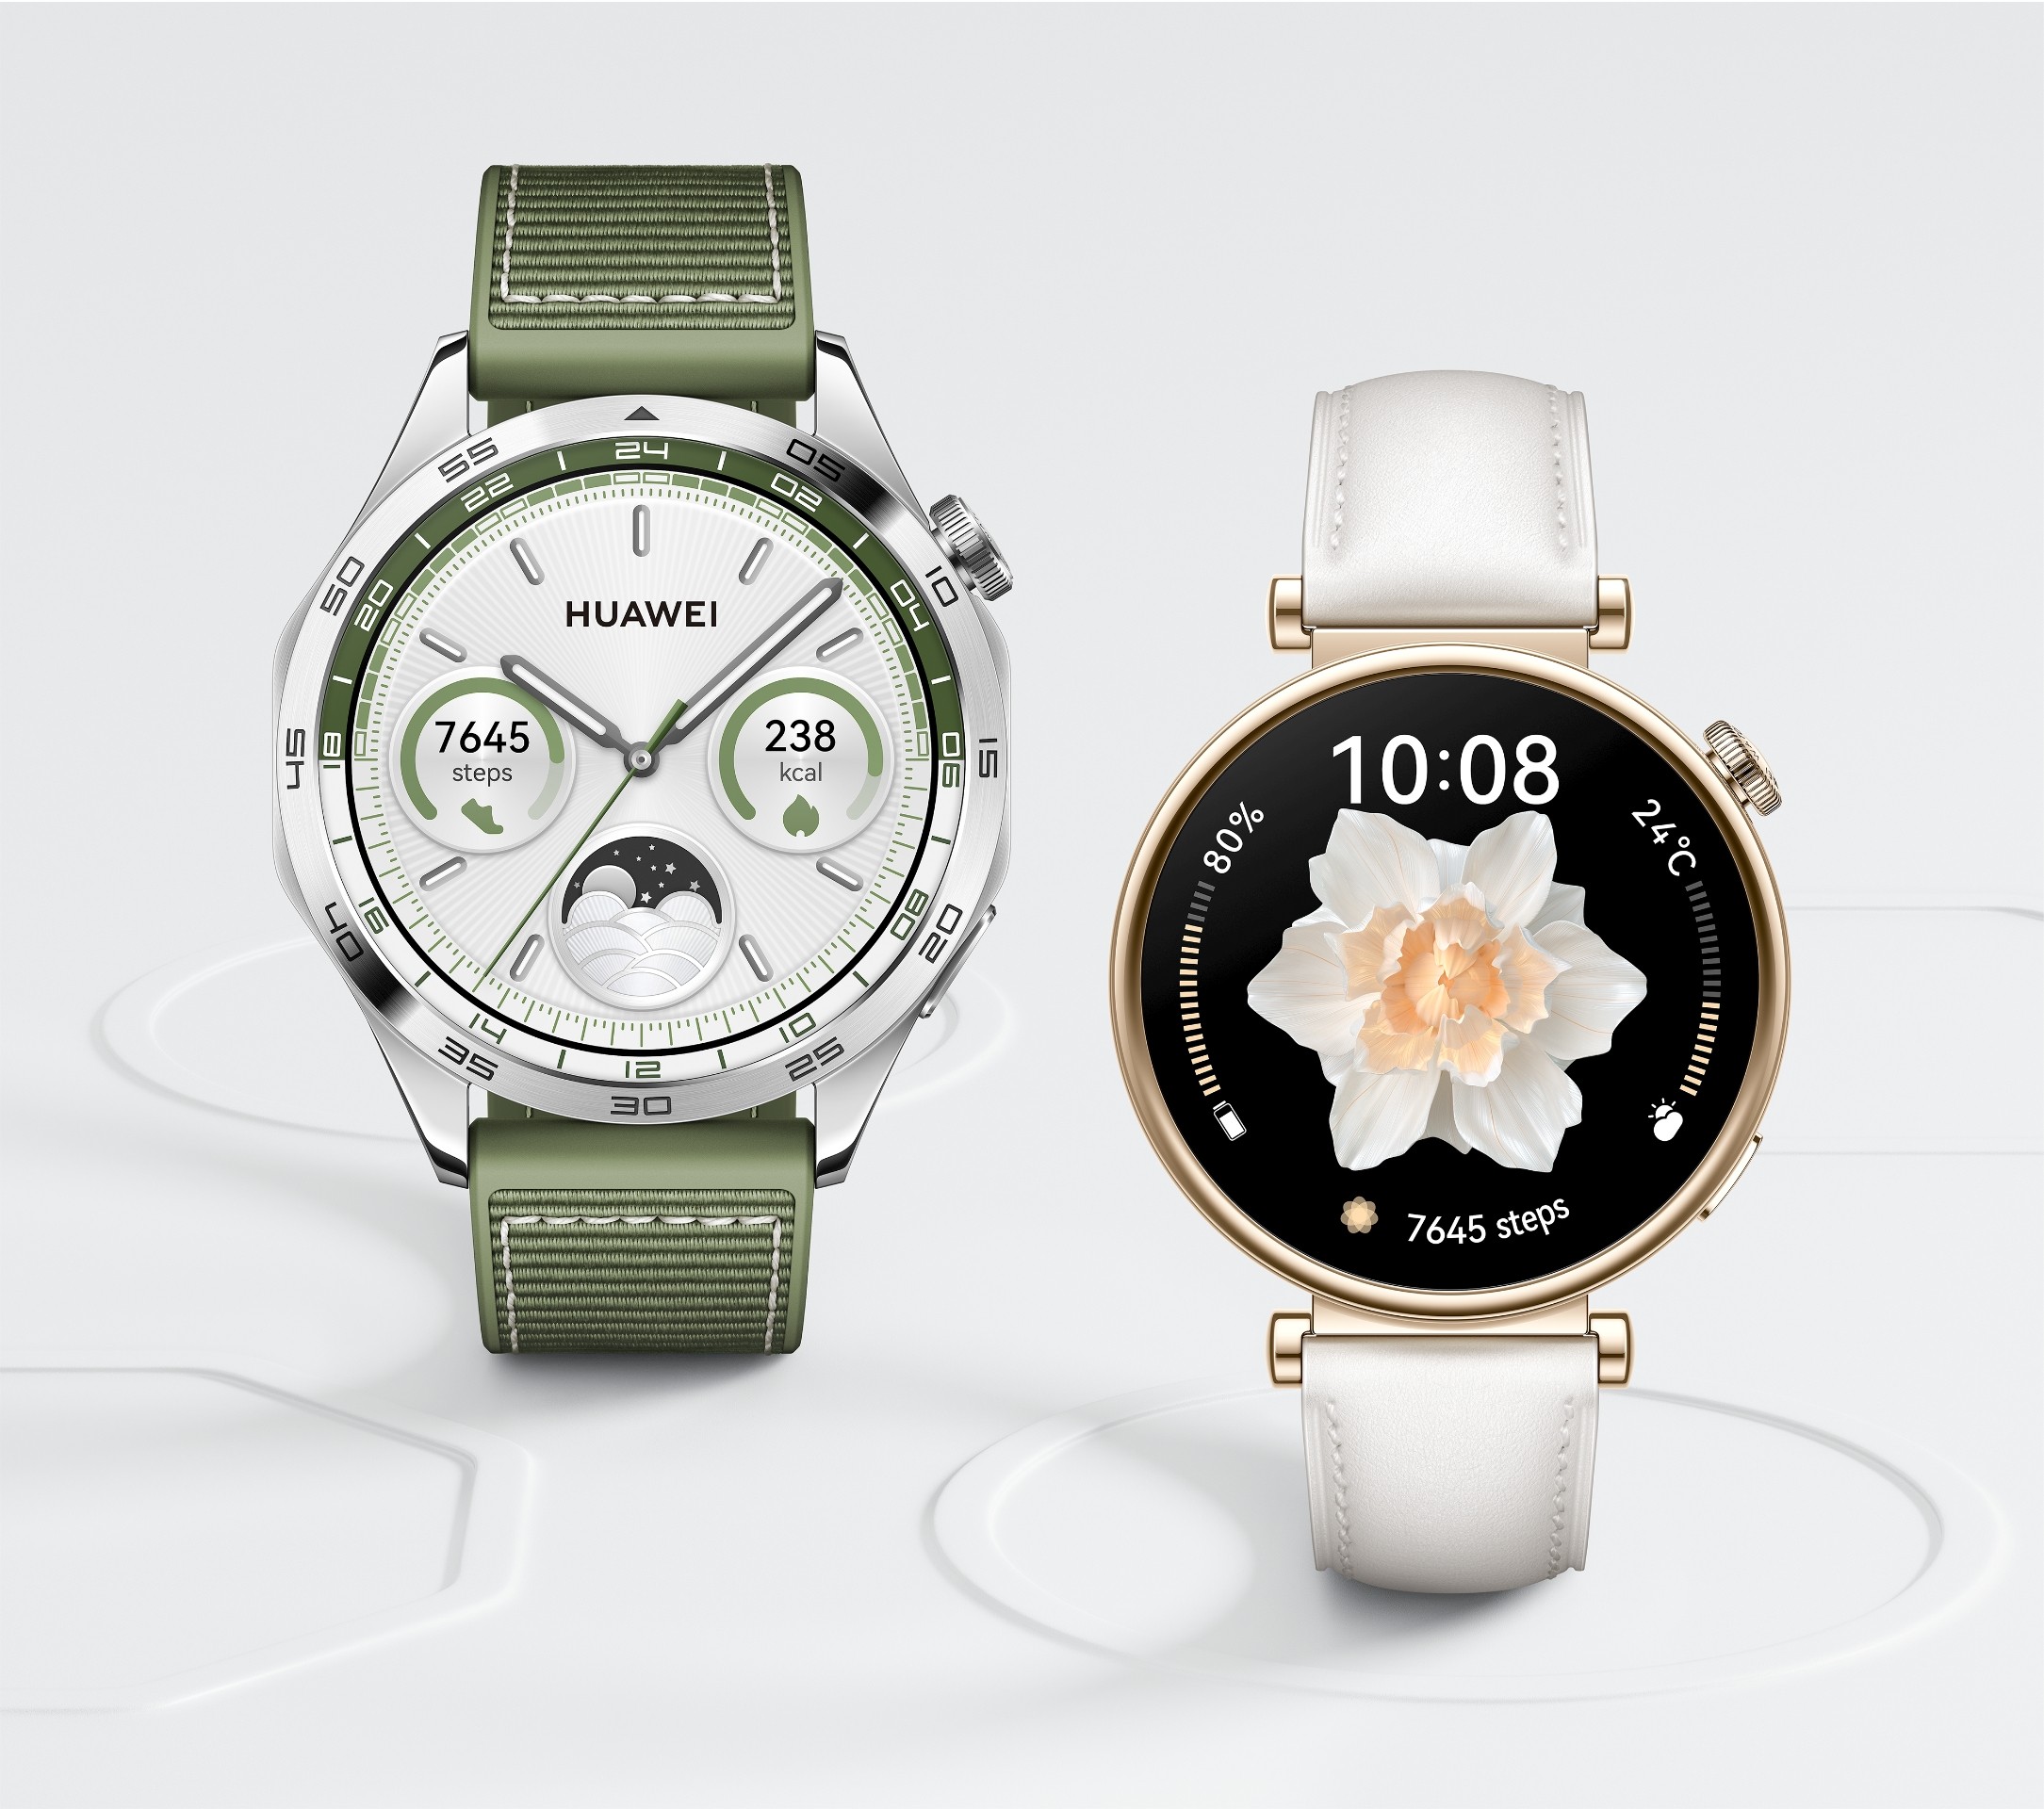 La Huawei Watch GT4 bénéficie d'une mise à jour logicielle et d'une fonction de suivi du sommeil améliorée